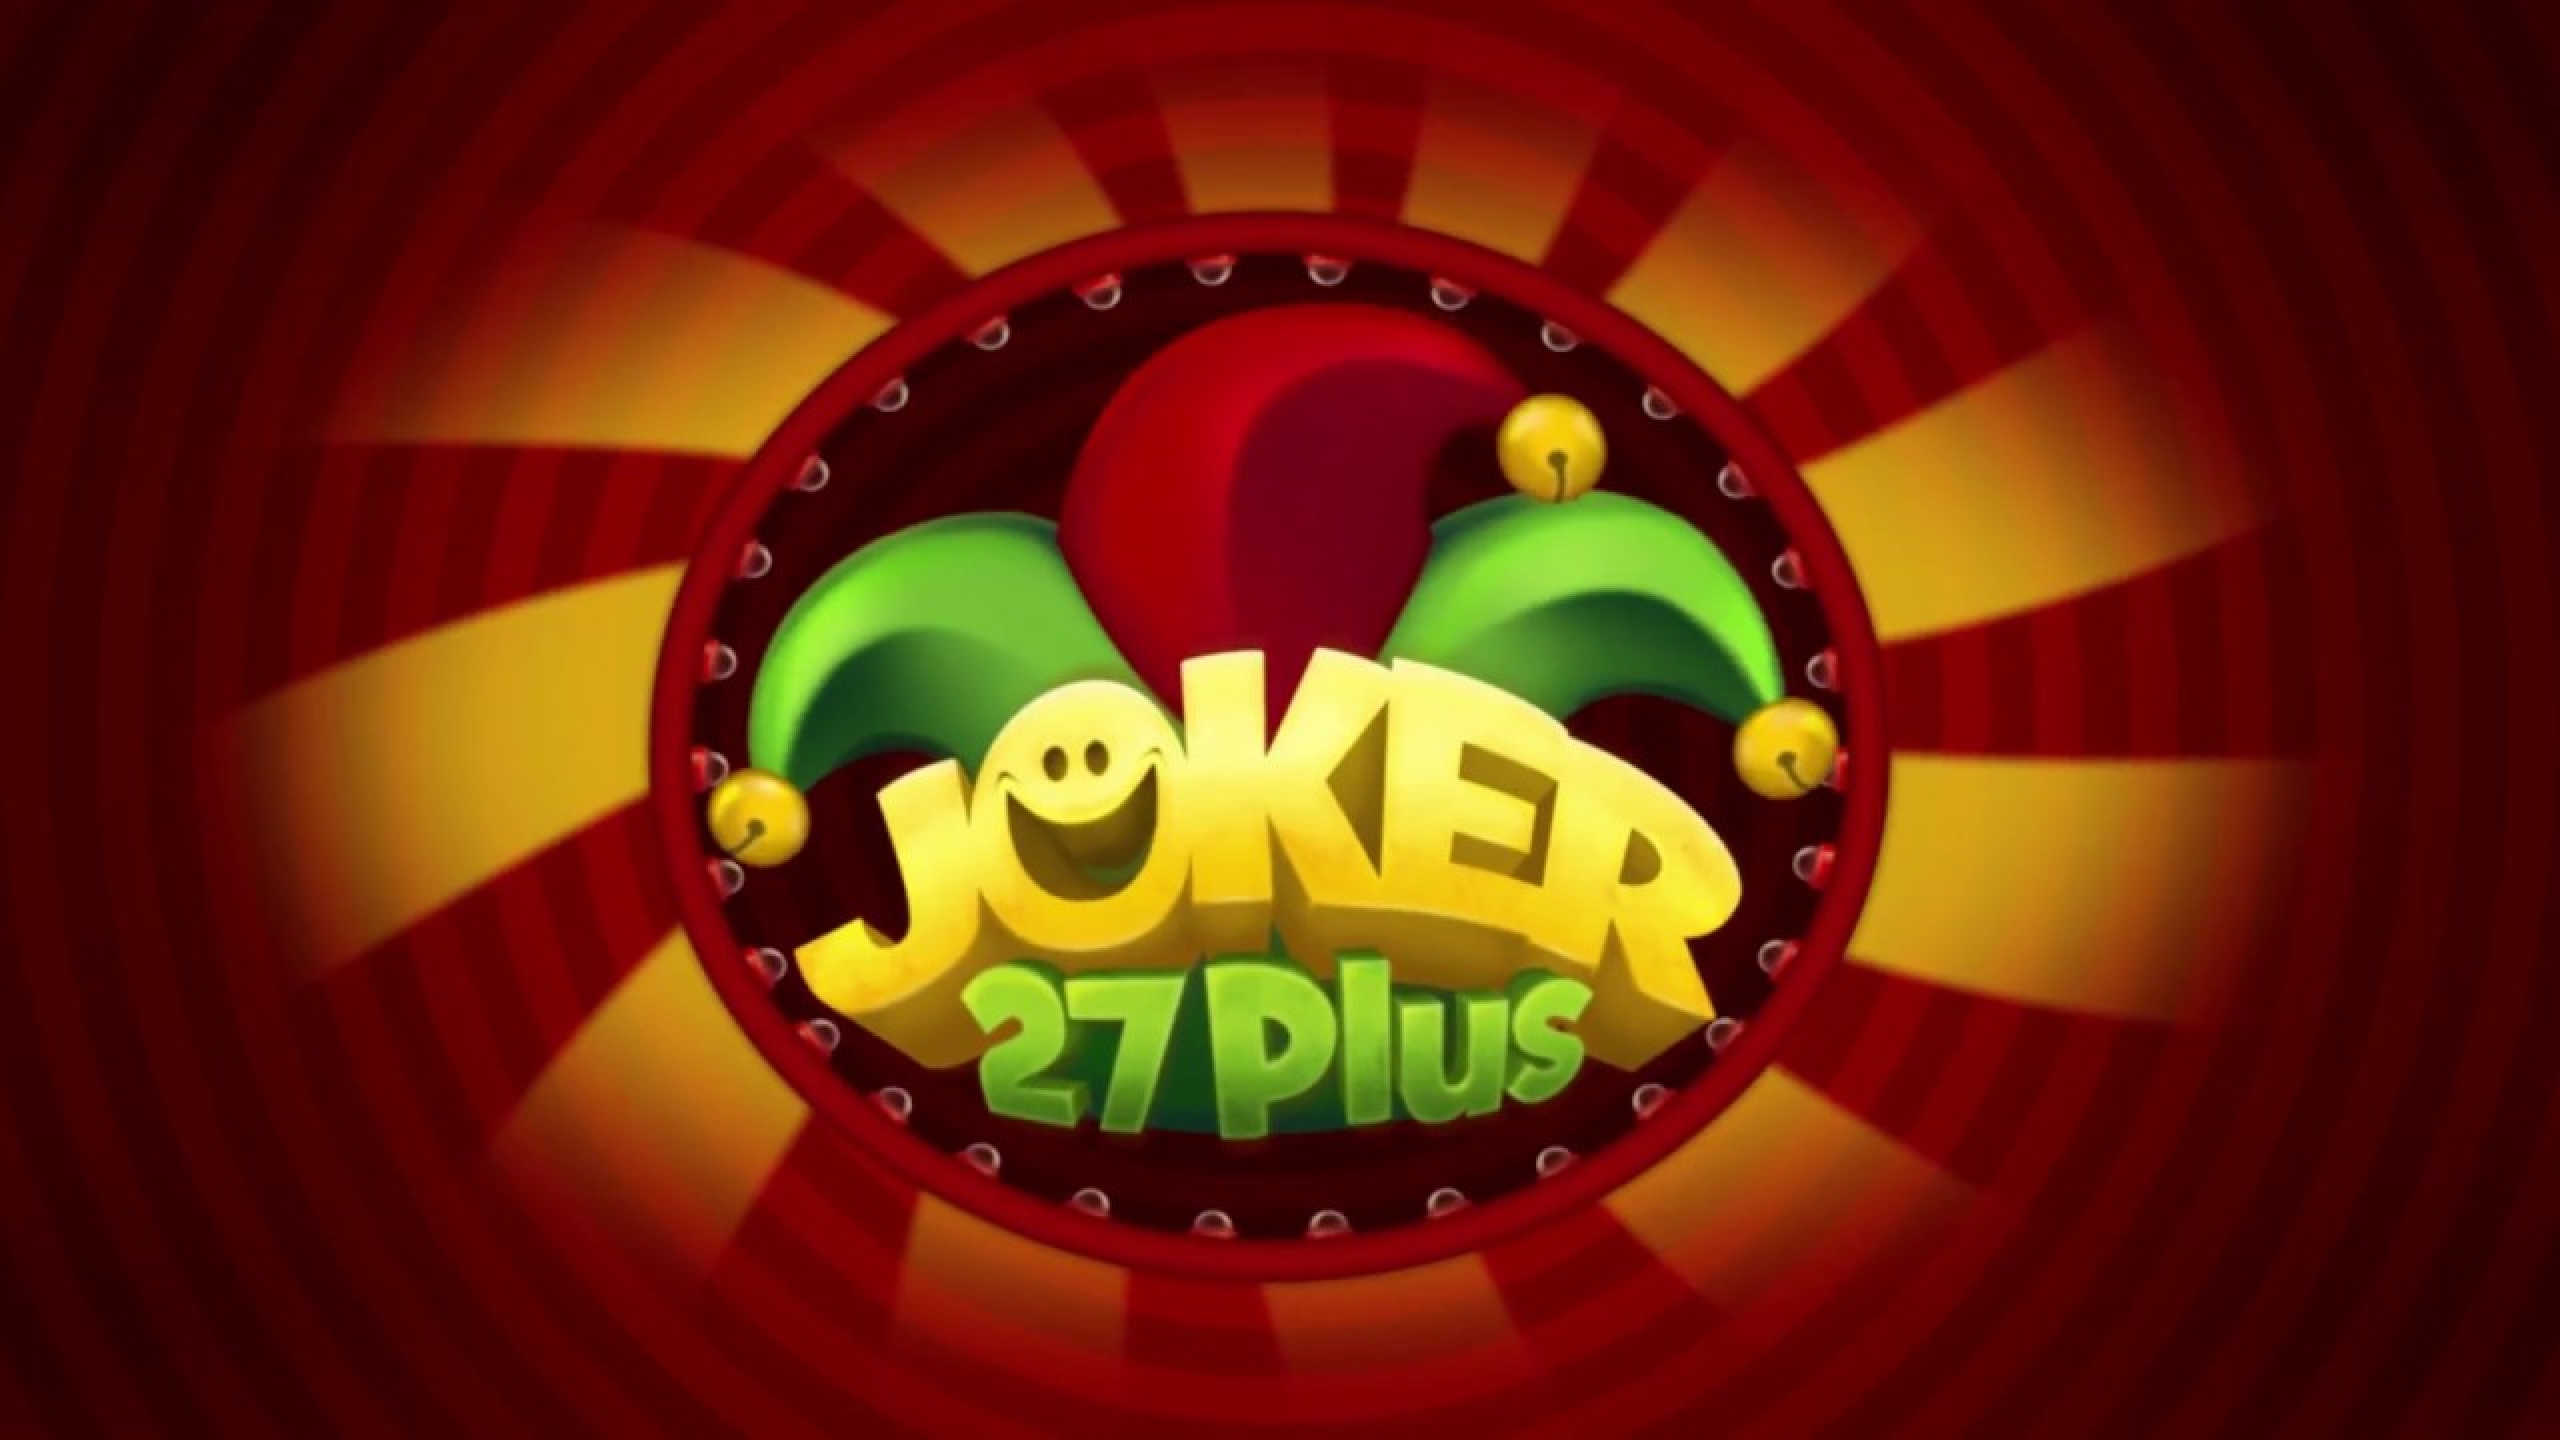 Joker 27 demo